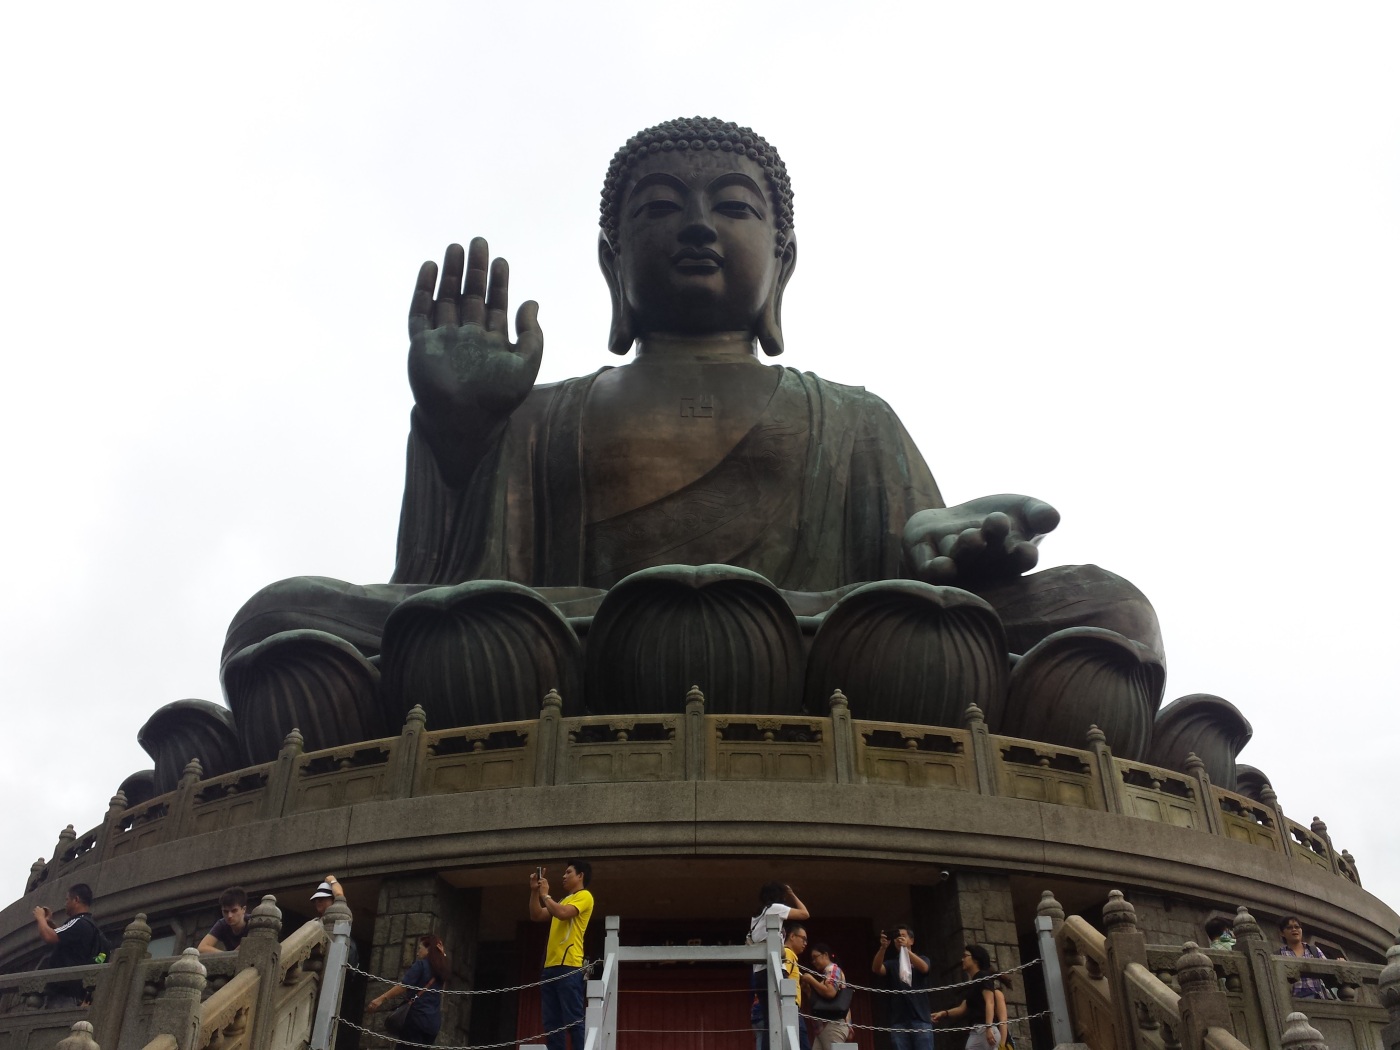 The Tian Tan Buddha, Hong Kong